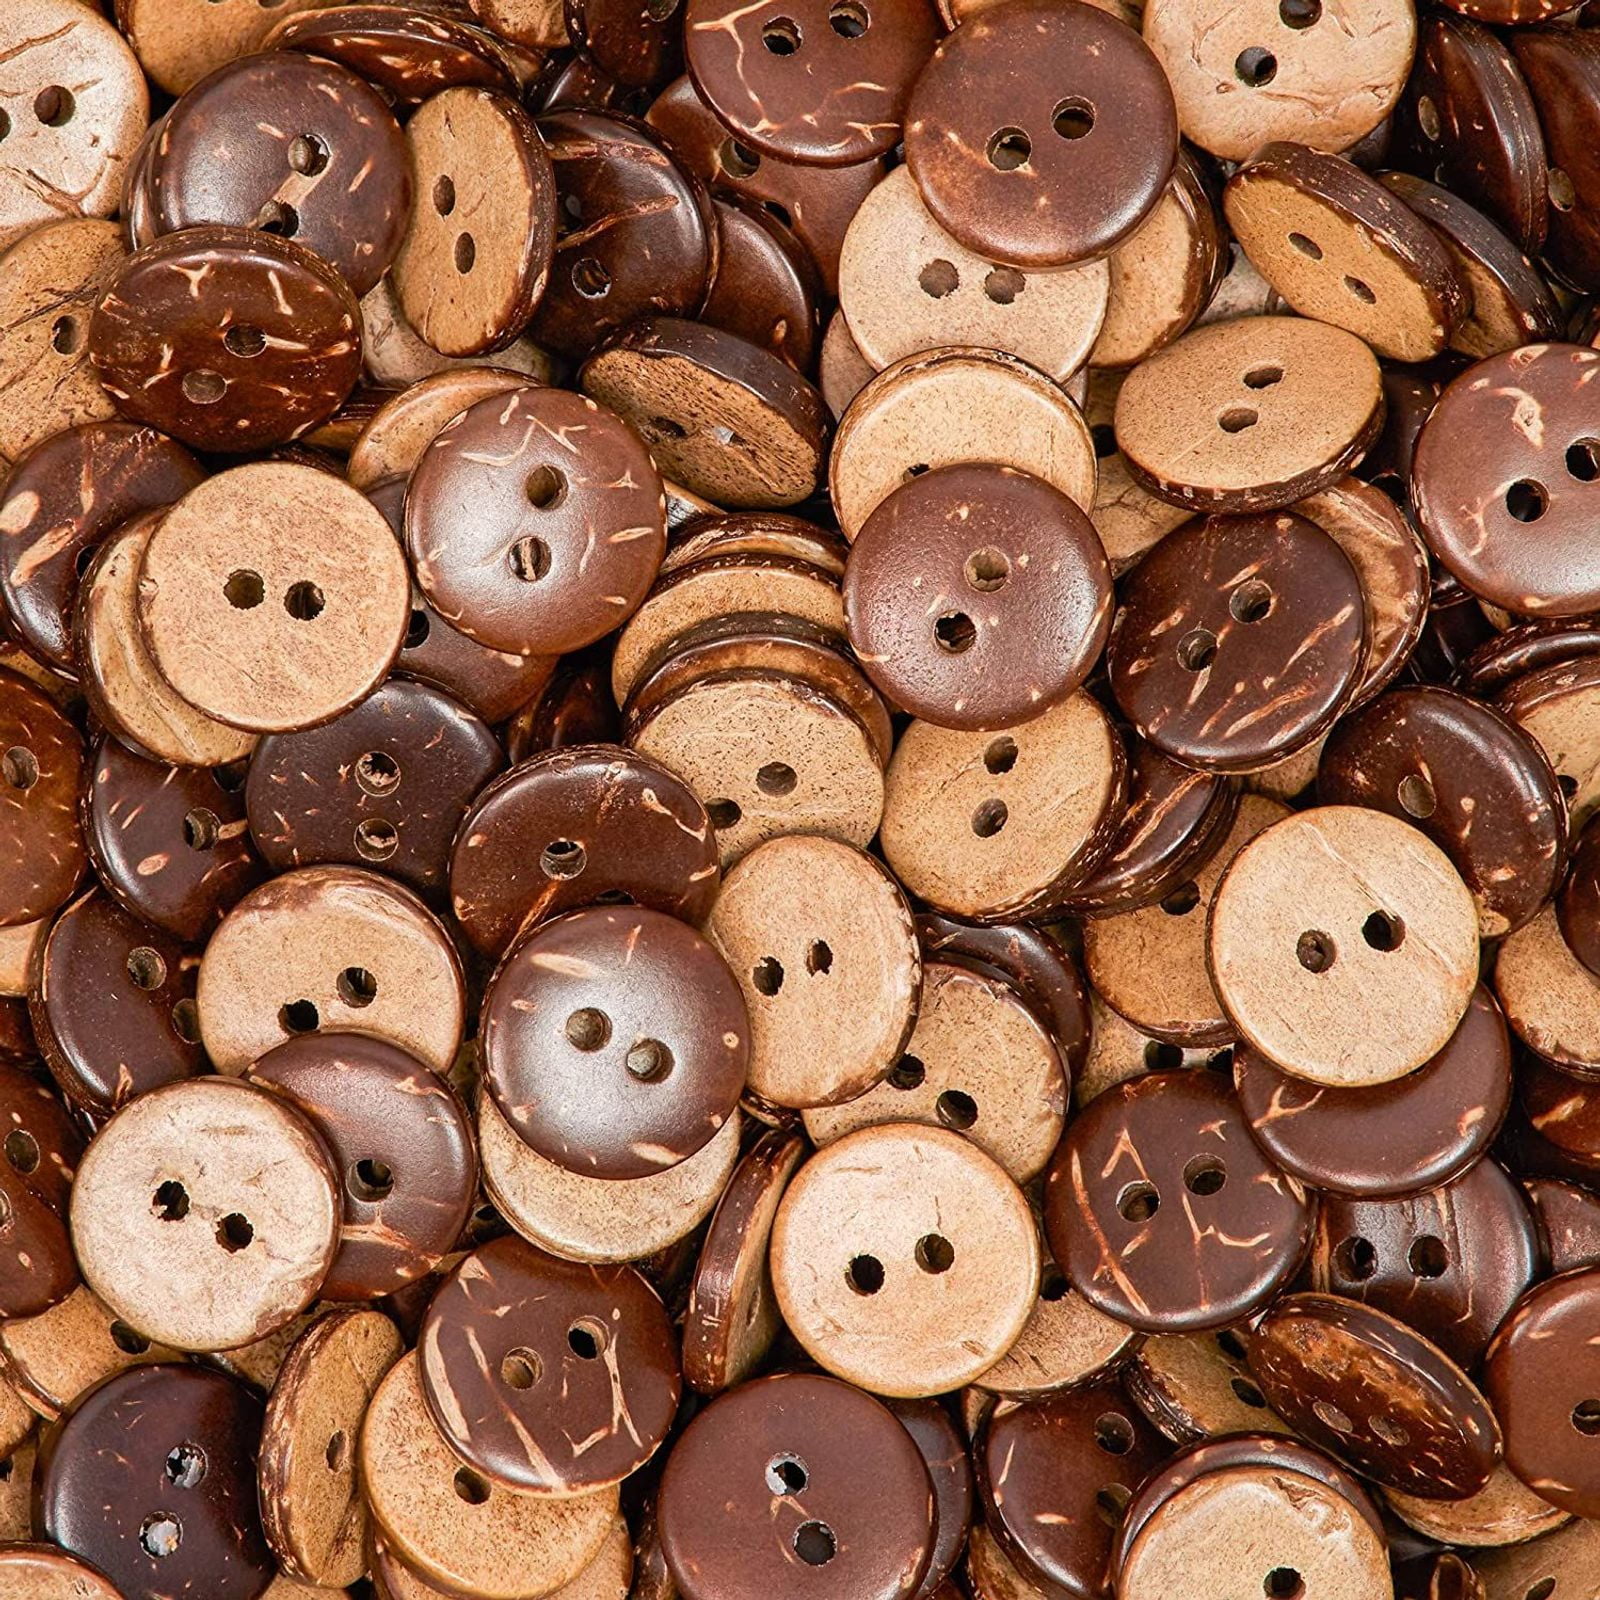 18mm.Vintage Wood Buttons Brown Color 2 Holes Circle Buttons design Set 24 pcs 